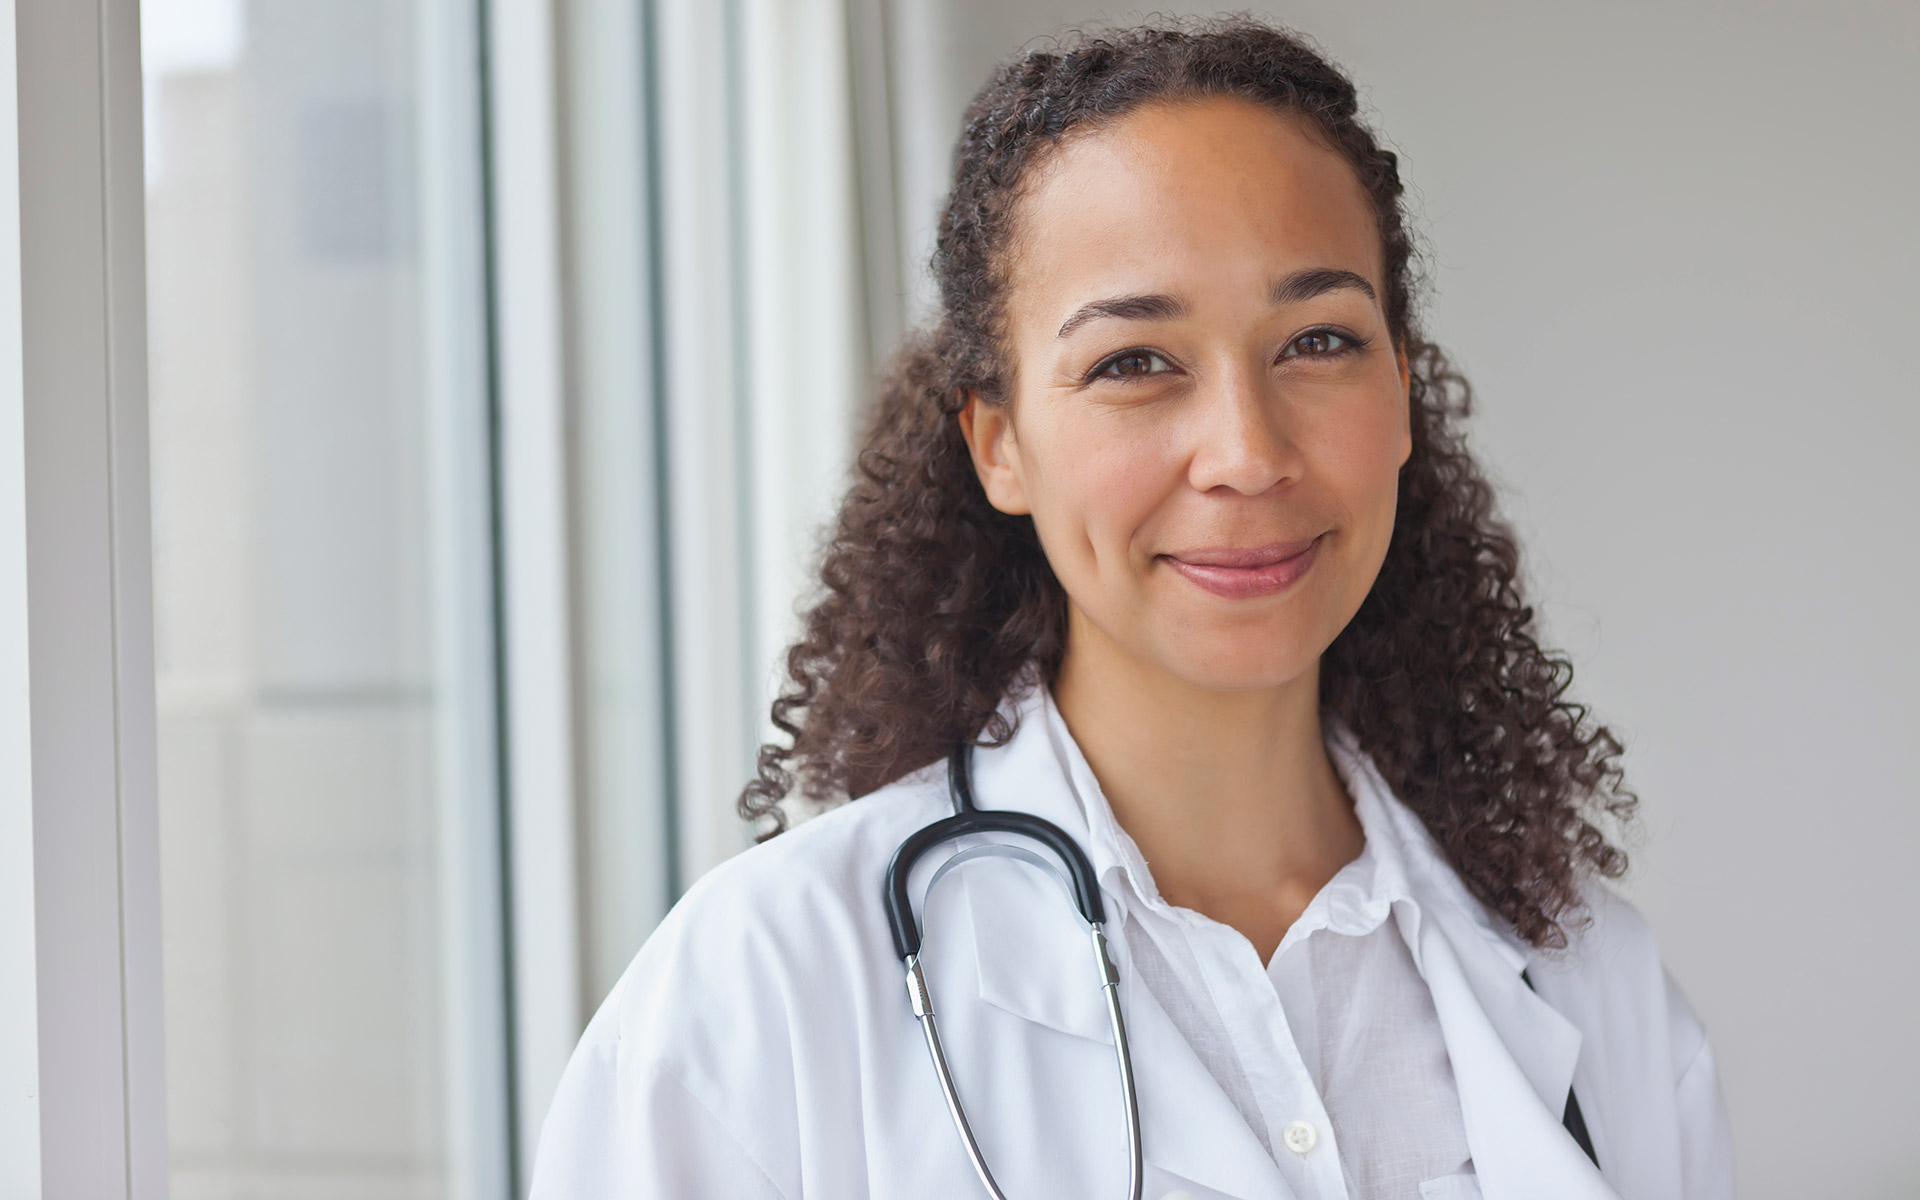 Smiling doctor understands how PSLF can hel her serve communities in need